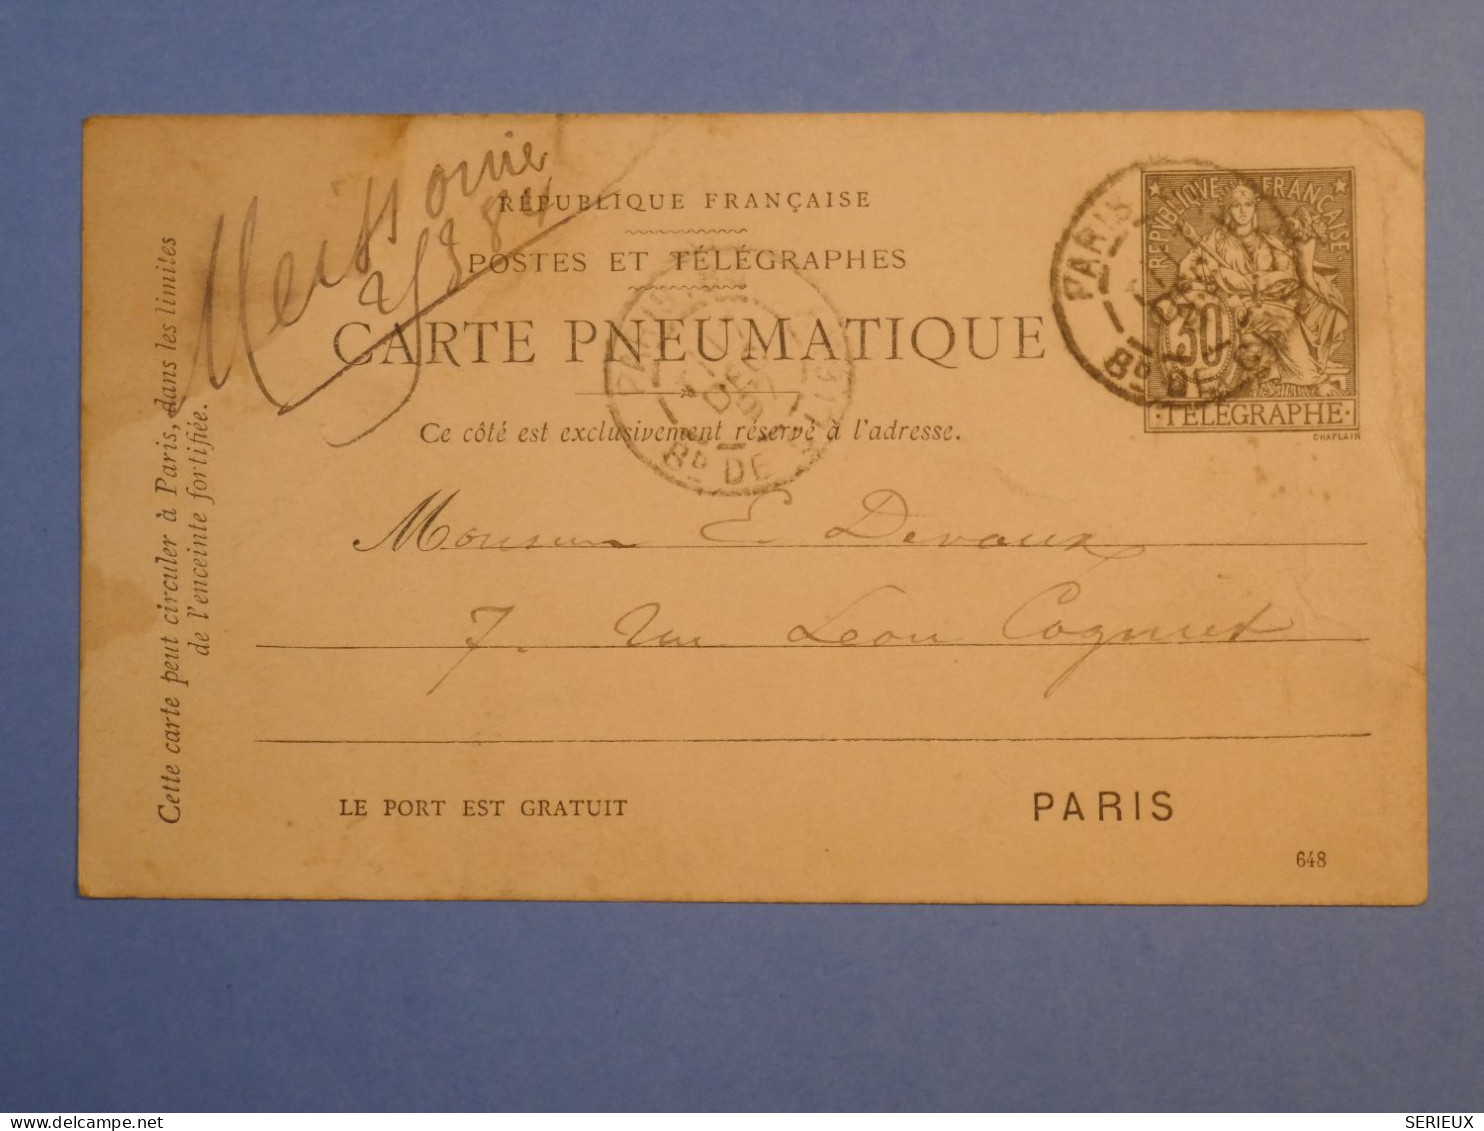 DK 12 FRANCE  BELLE CARTE TELEGRAMME 17 12  1891  TROYES A STE SAVINE +AFF. INTERESSANT++ ++ + - Telegraphie Und Telefon